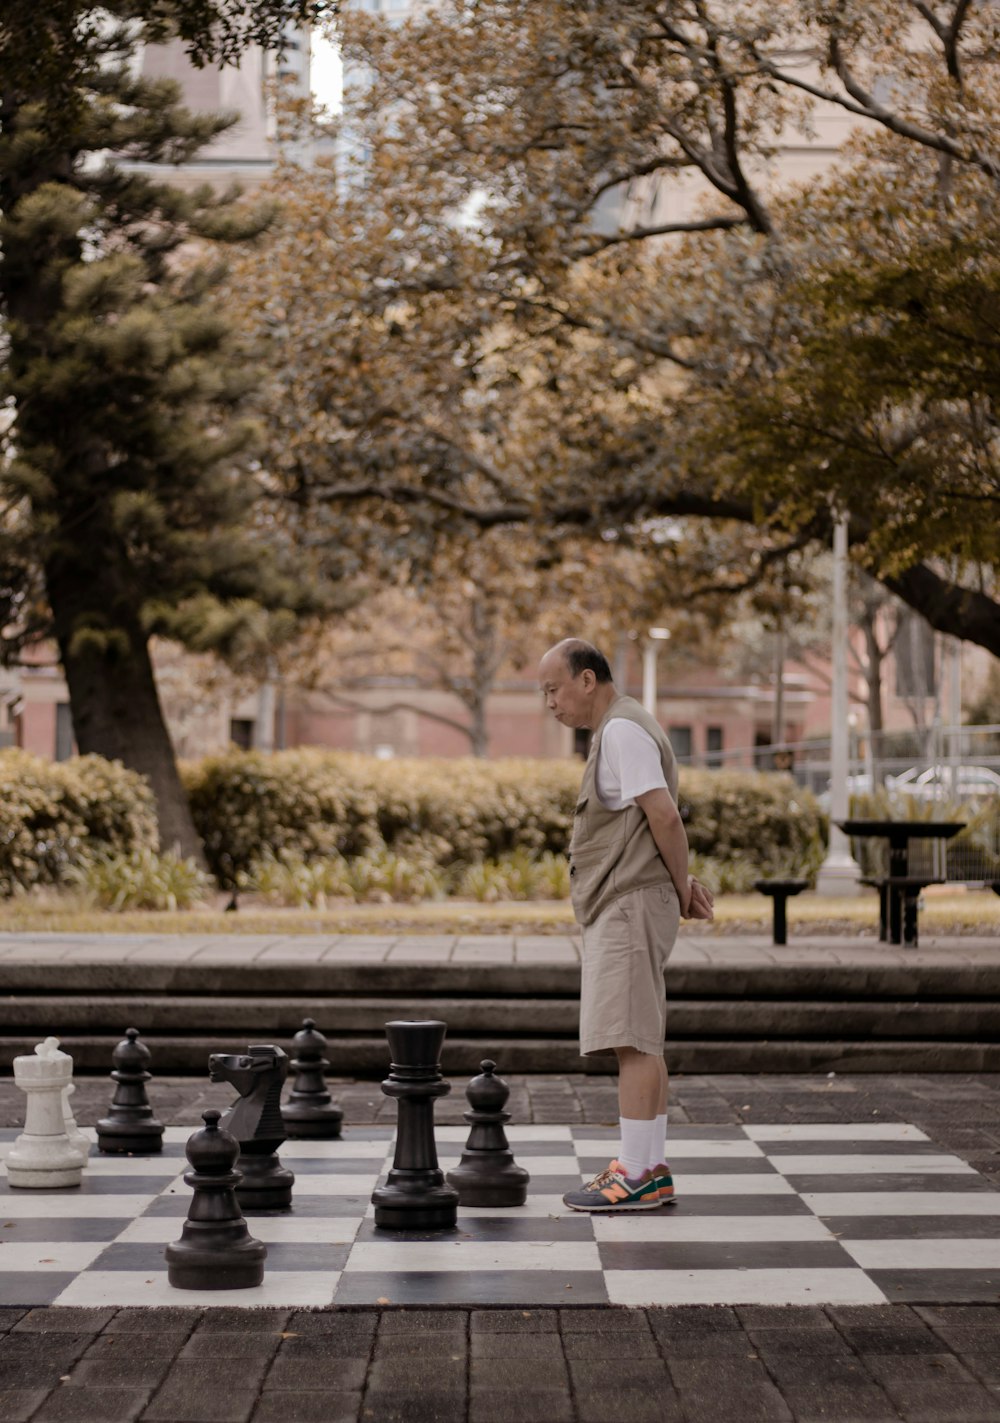 공원에서 가슴 조각으로 큰 체스 판에 서있는 남자